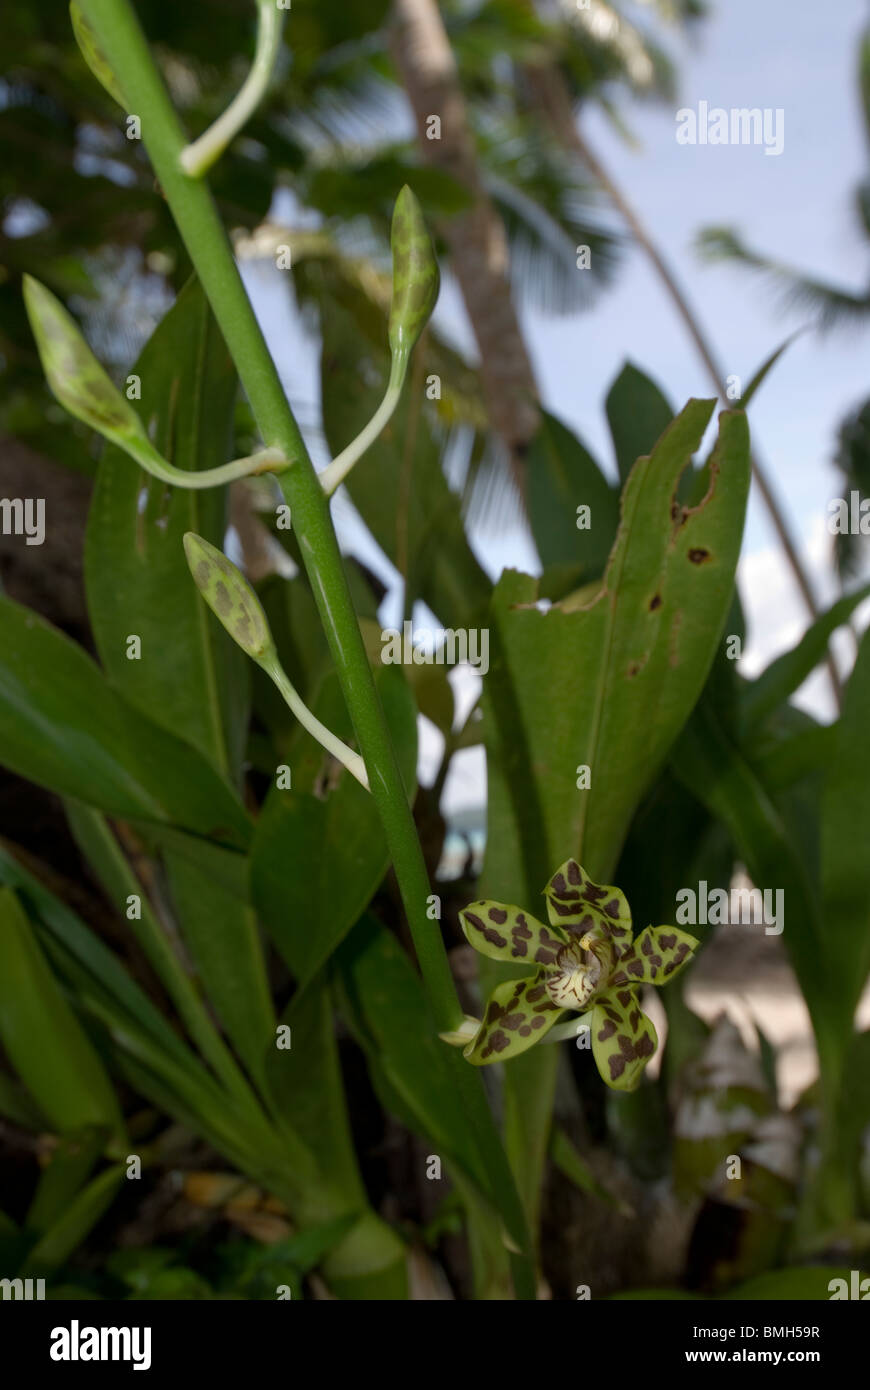 Orchidee, Coelogyne SP. wächst in der Nähe von Strand am Kai Kecil, Molukken, Indonesien Stockfoto